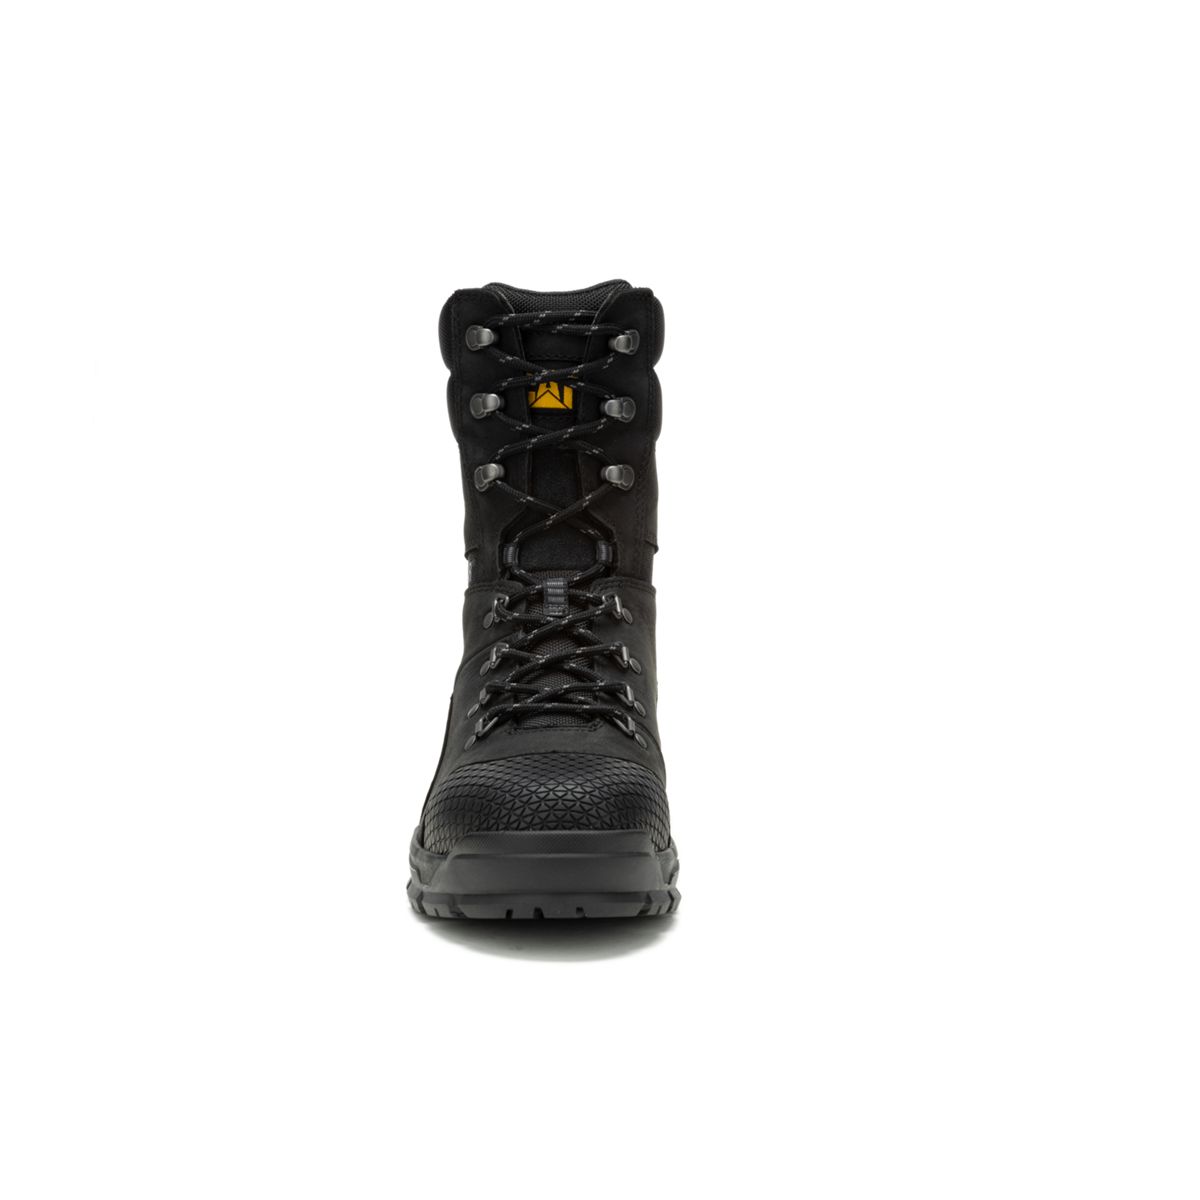 Accomplice X 8" Waterproof Steel Toe Work Boot, Black, dynamic 3